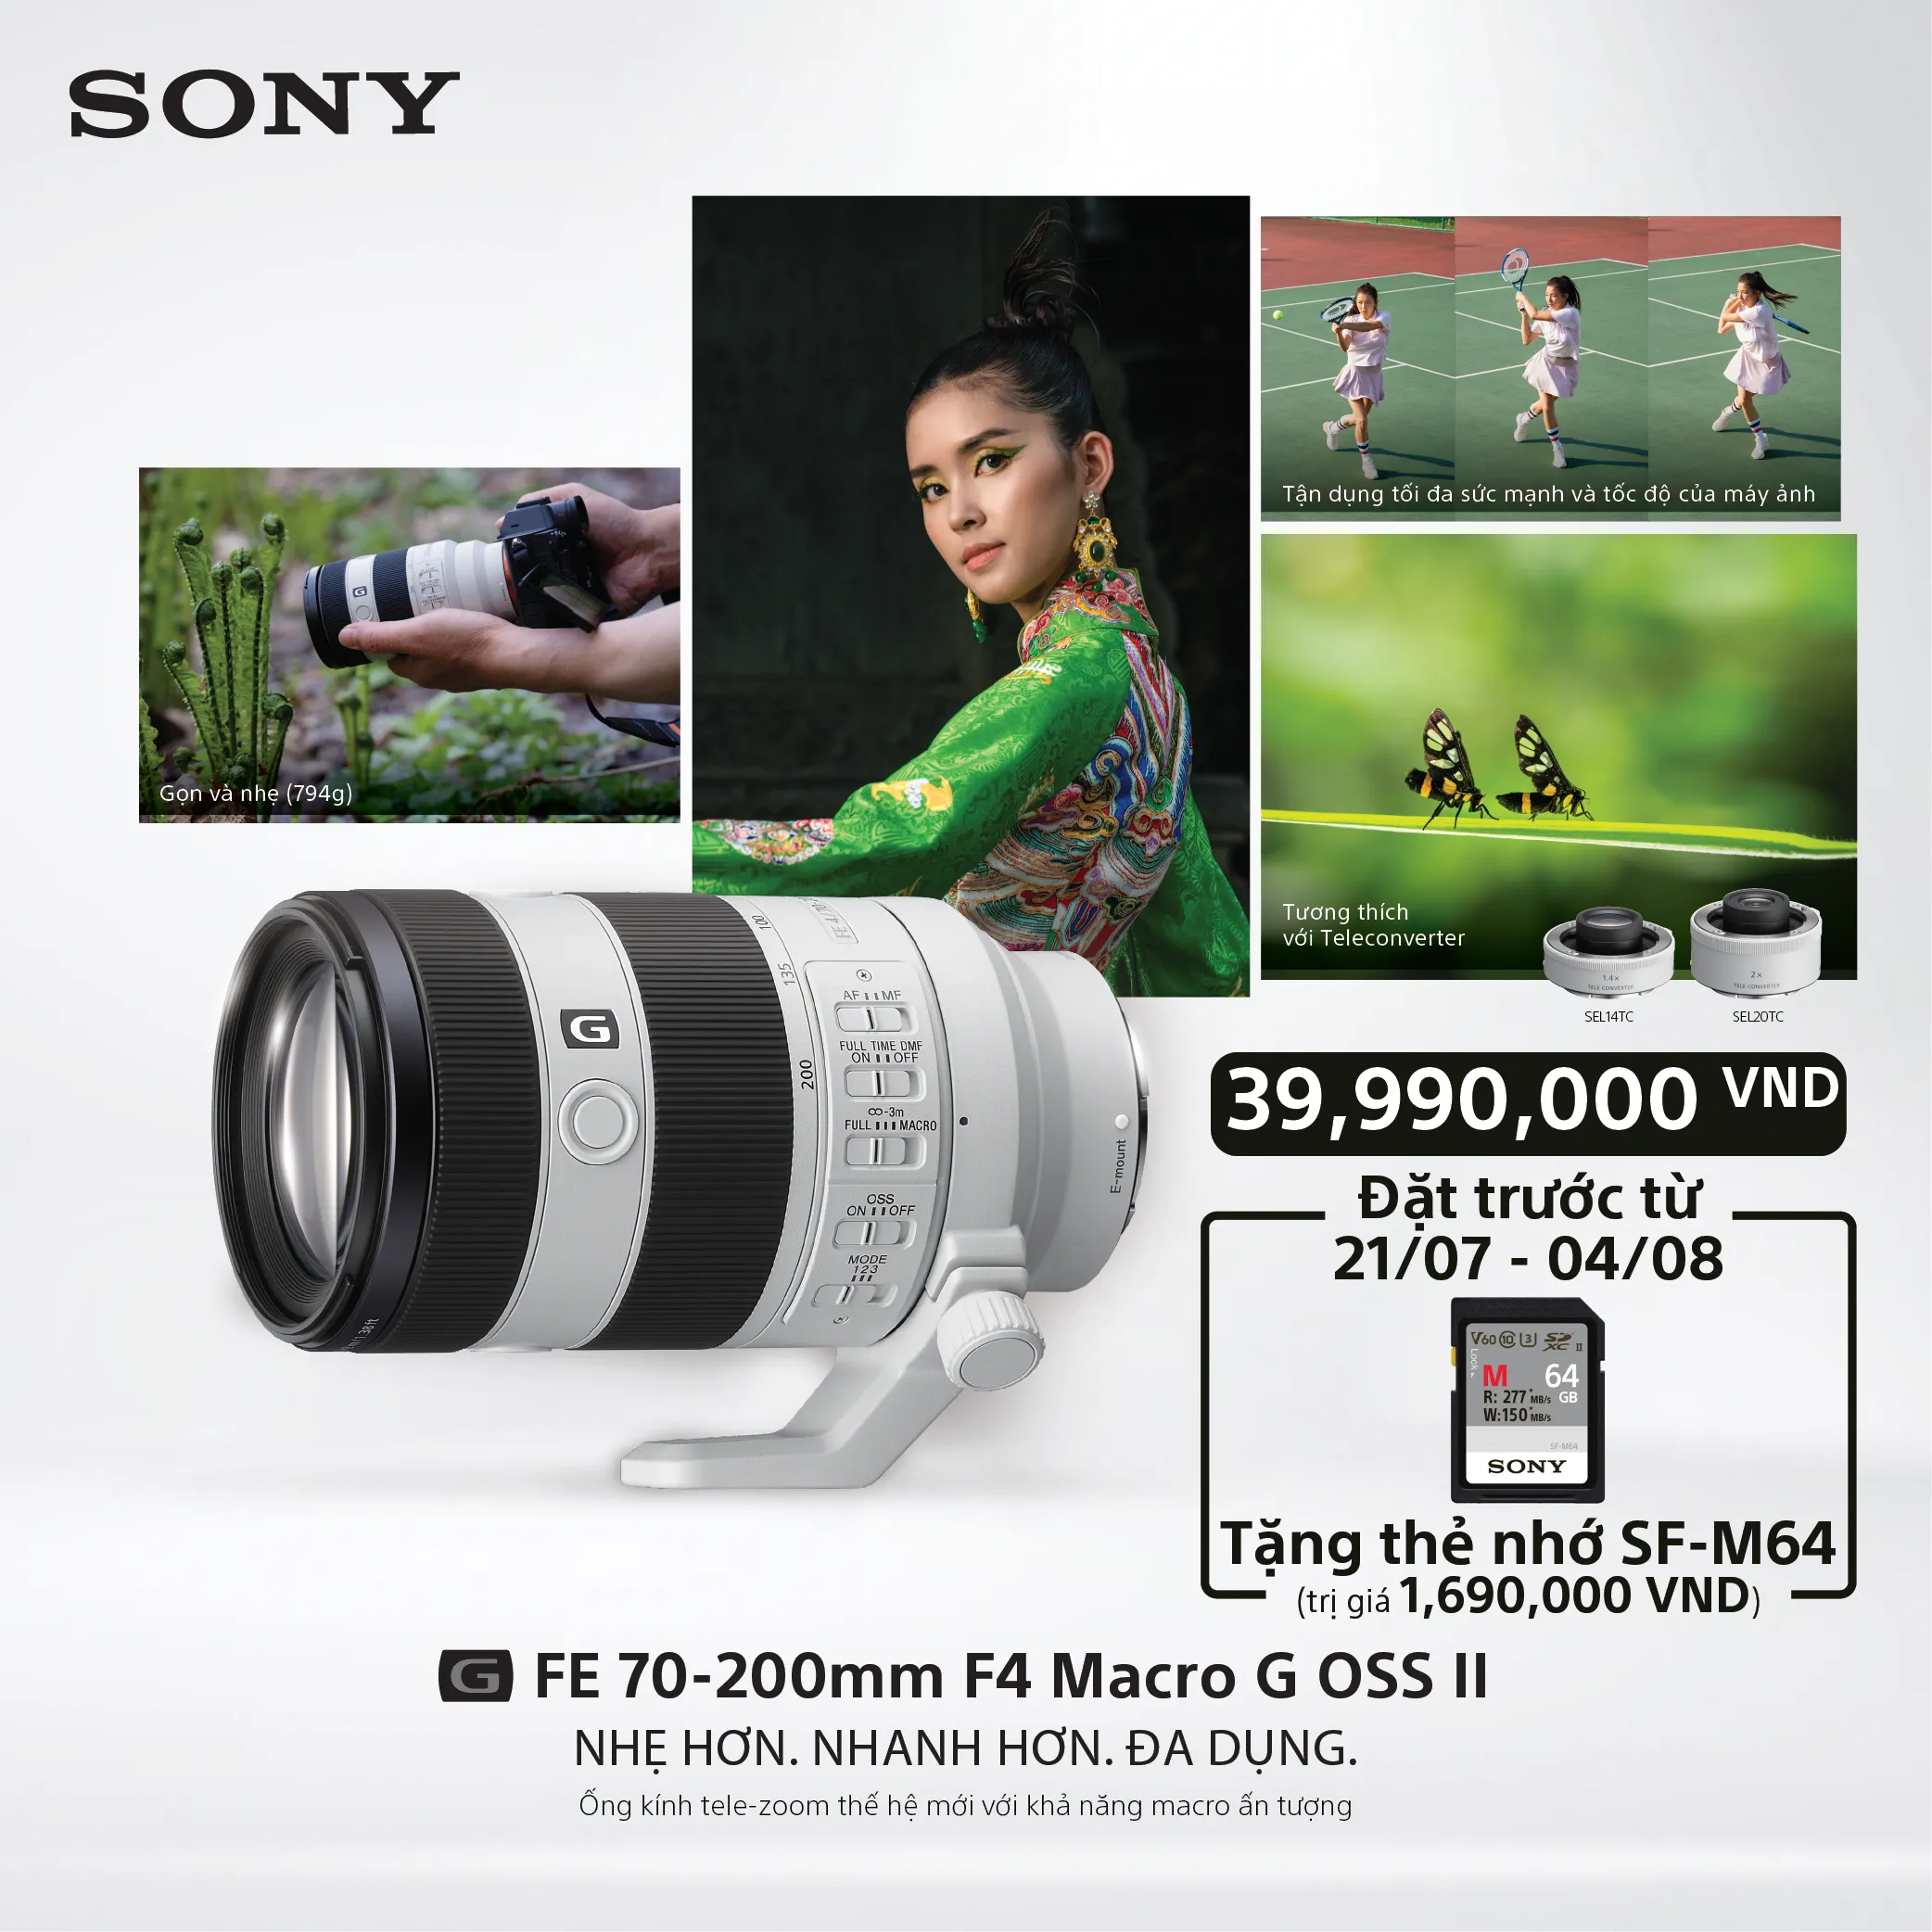 Ống kính Sony FE 70-200mm F4 Macro G OSS II có giá bán 39,990,000 VND